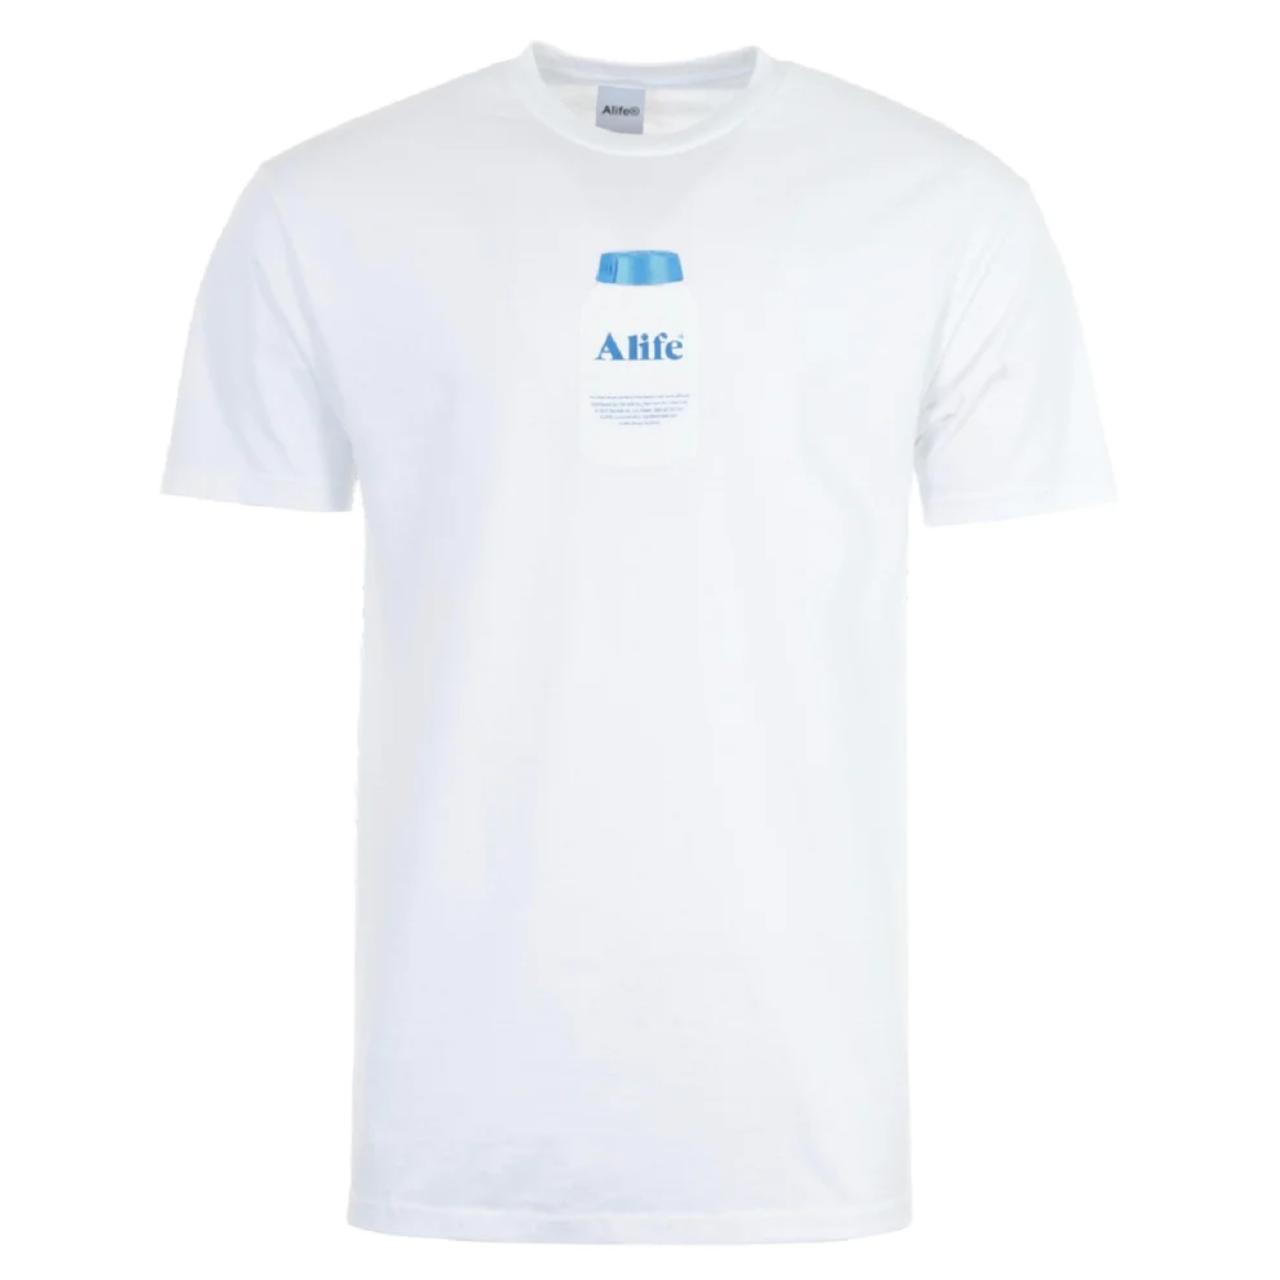 Alife Men's White T-shirt | Depop